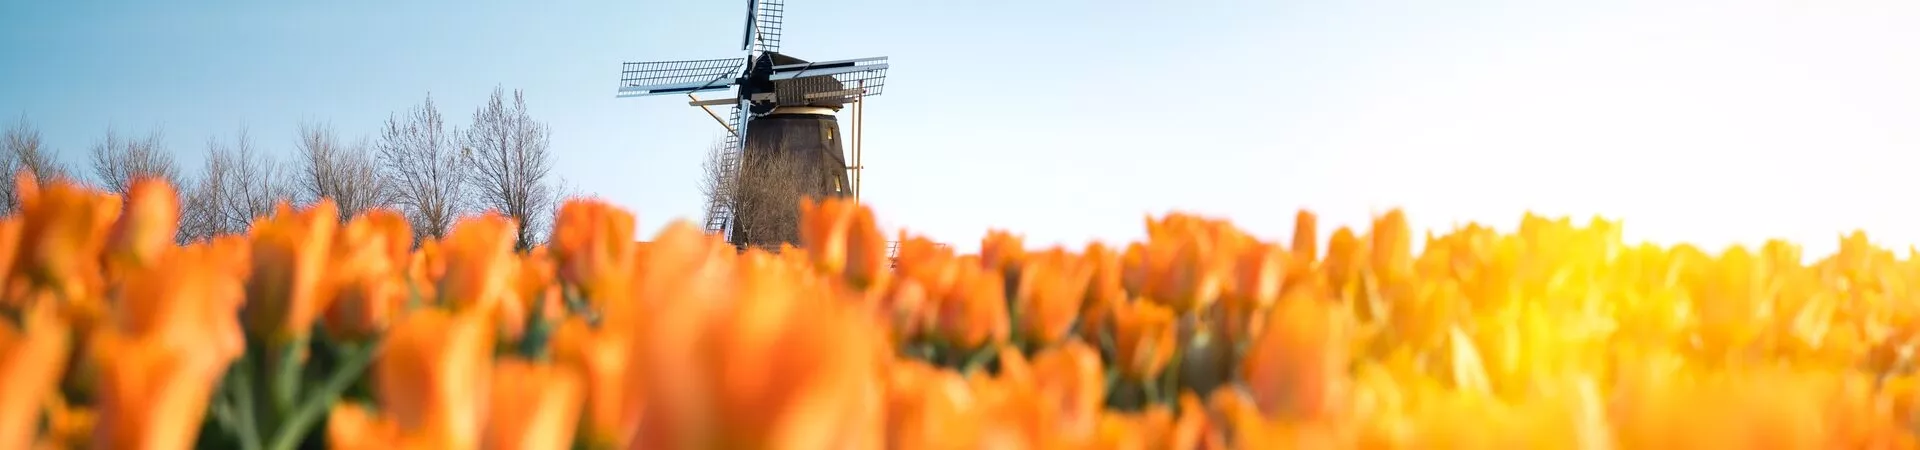 Windmill behind tulip field